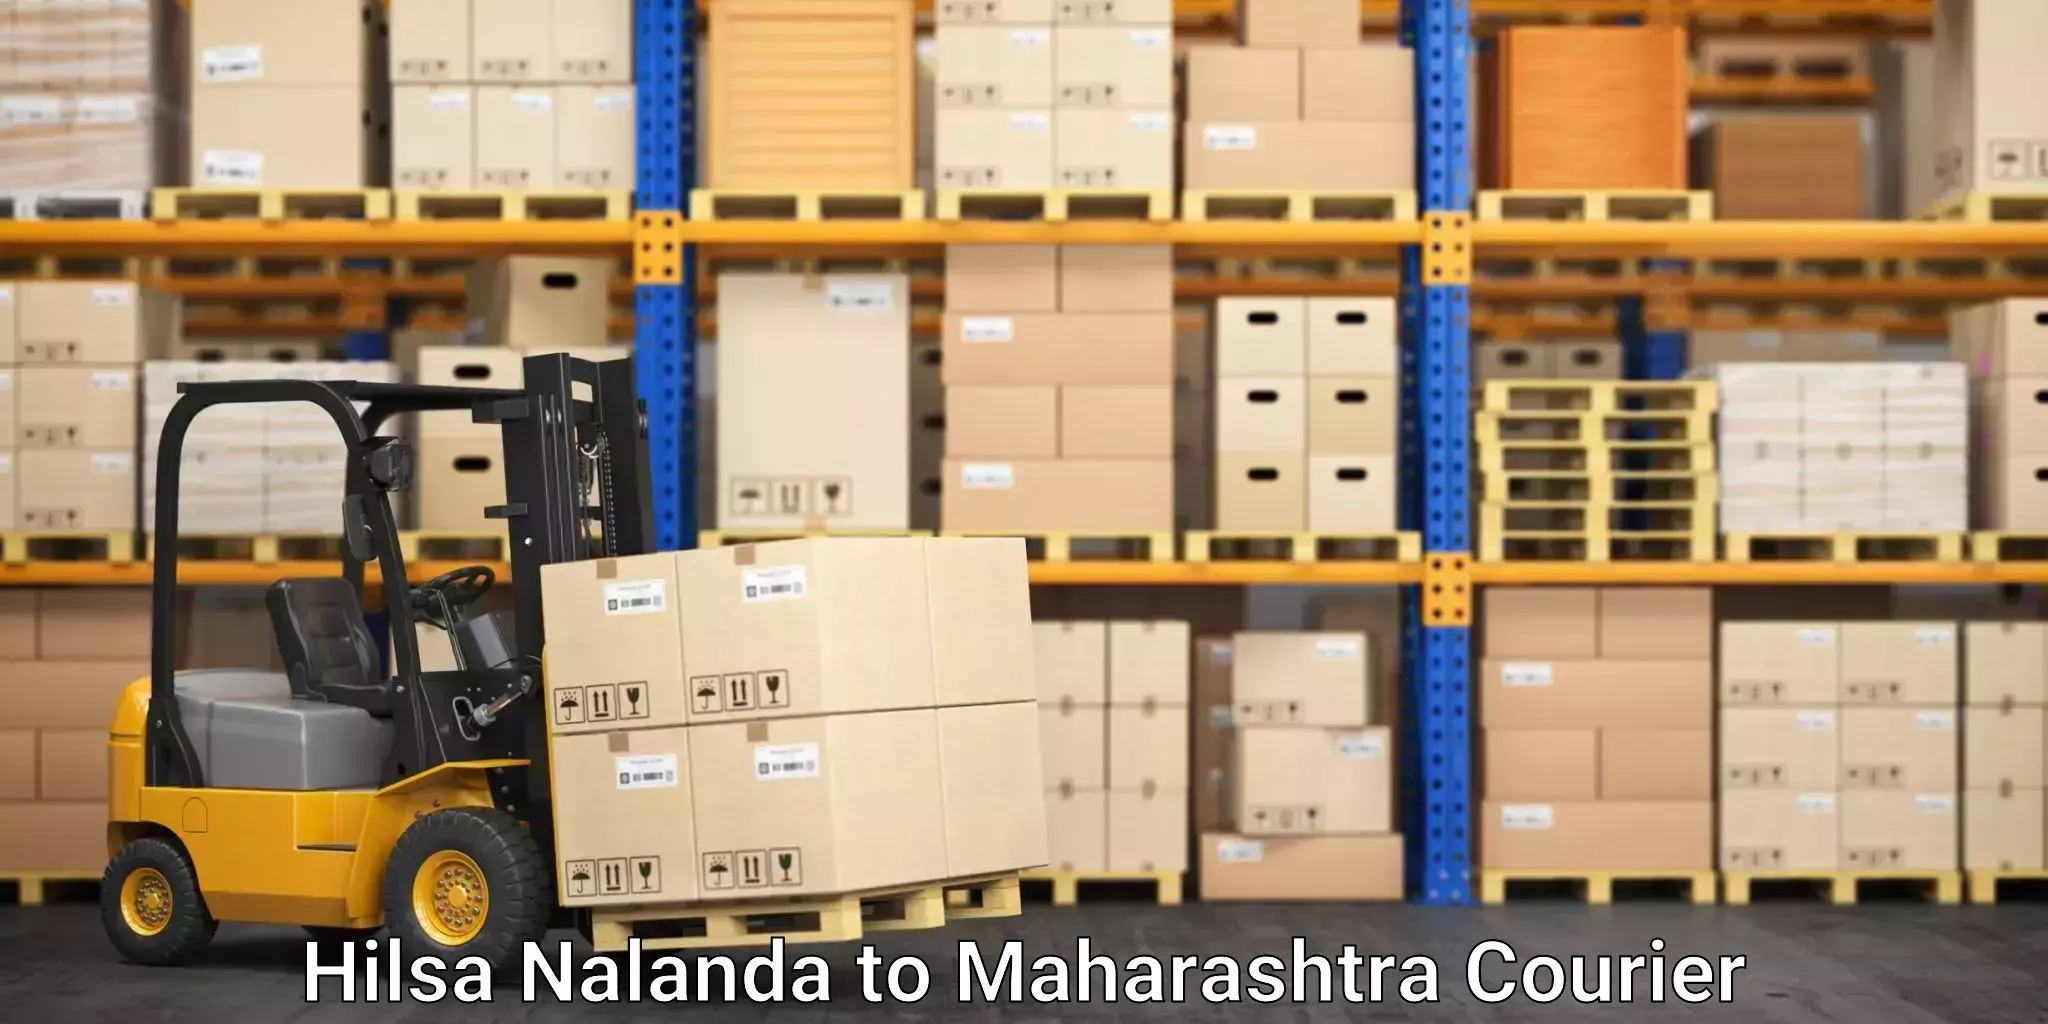 Professional packing services Hilsa Nalanda to Navi Mumbai